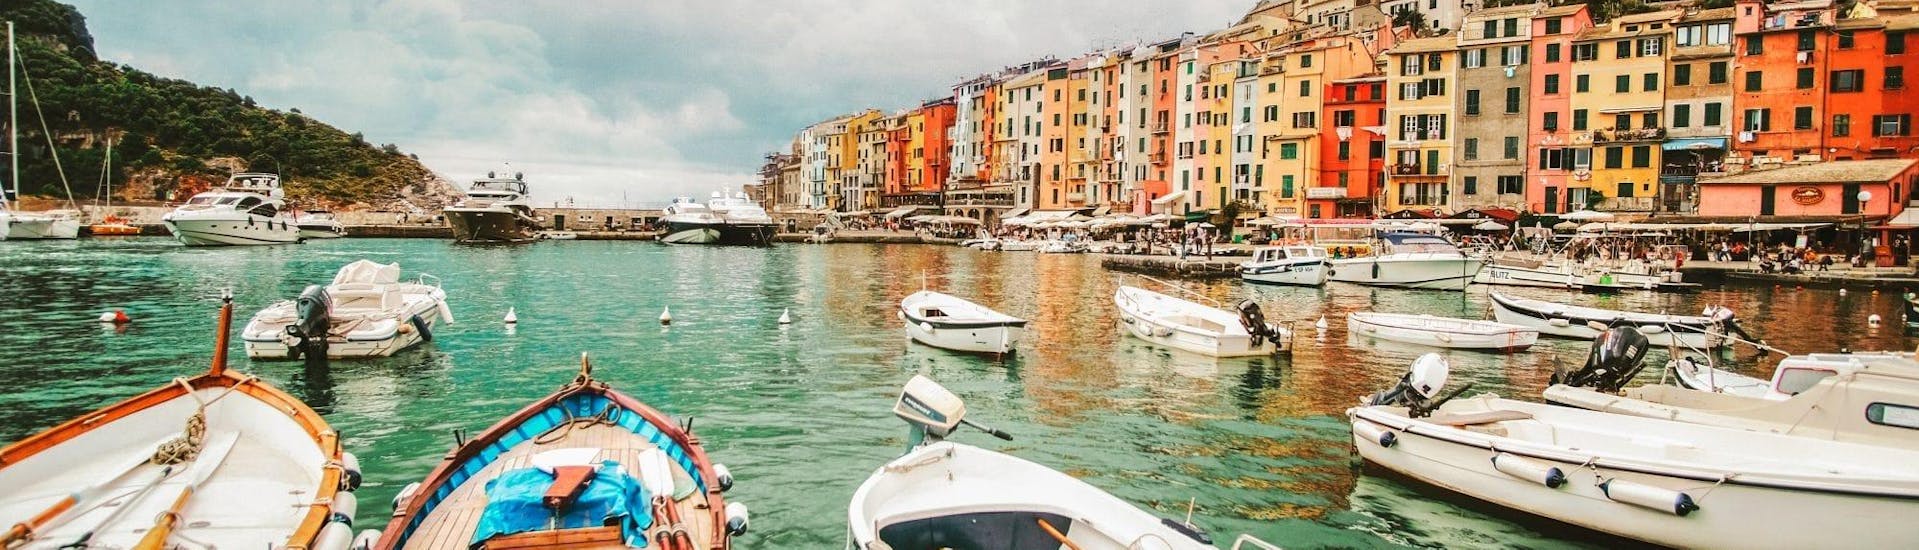 Il bellissimo paesaggio di Porto Venere che si può ammirare durante la gita in barca a Porto Venere e Vernazza con Sightseeing con Cinque Terre Ferries.